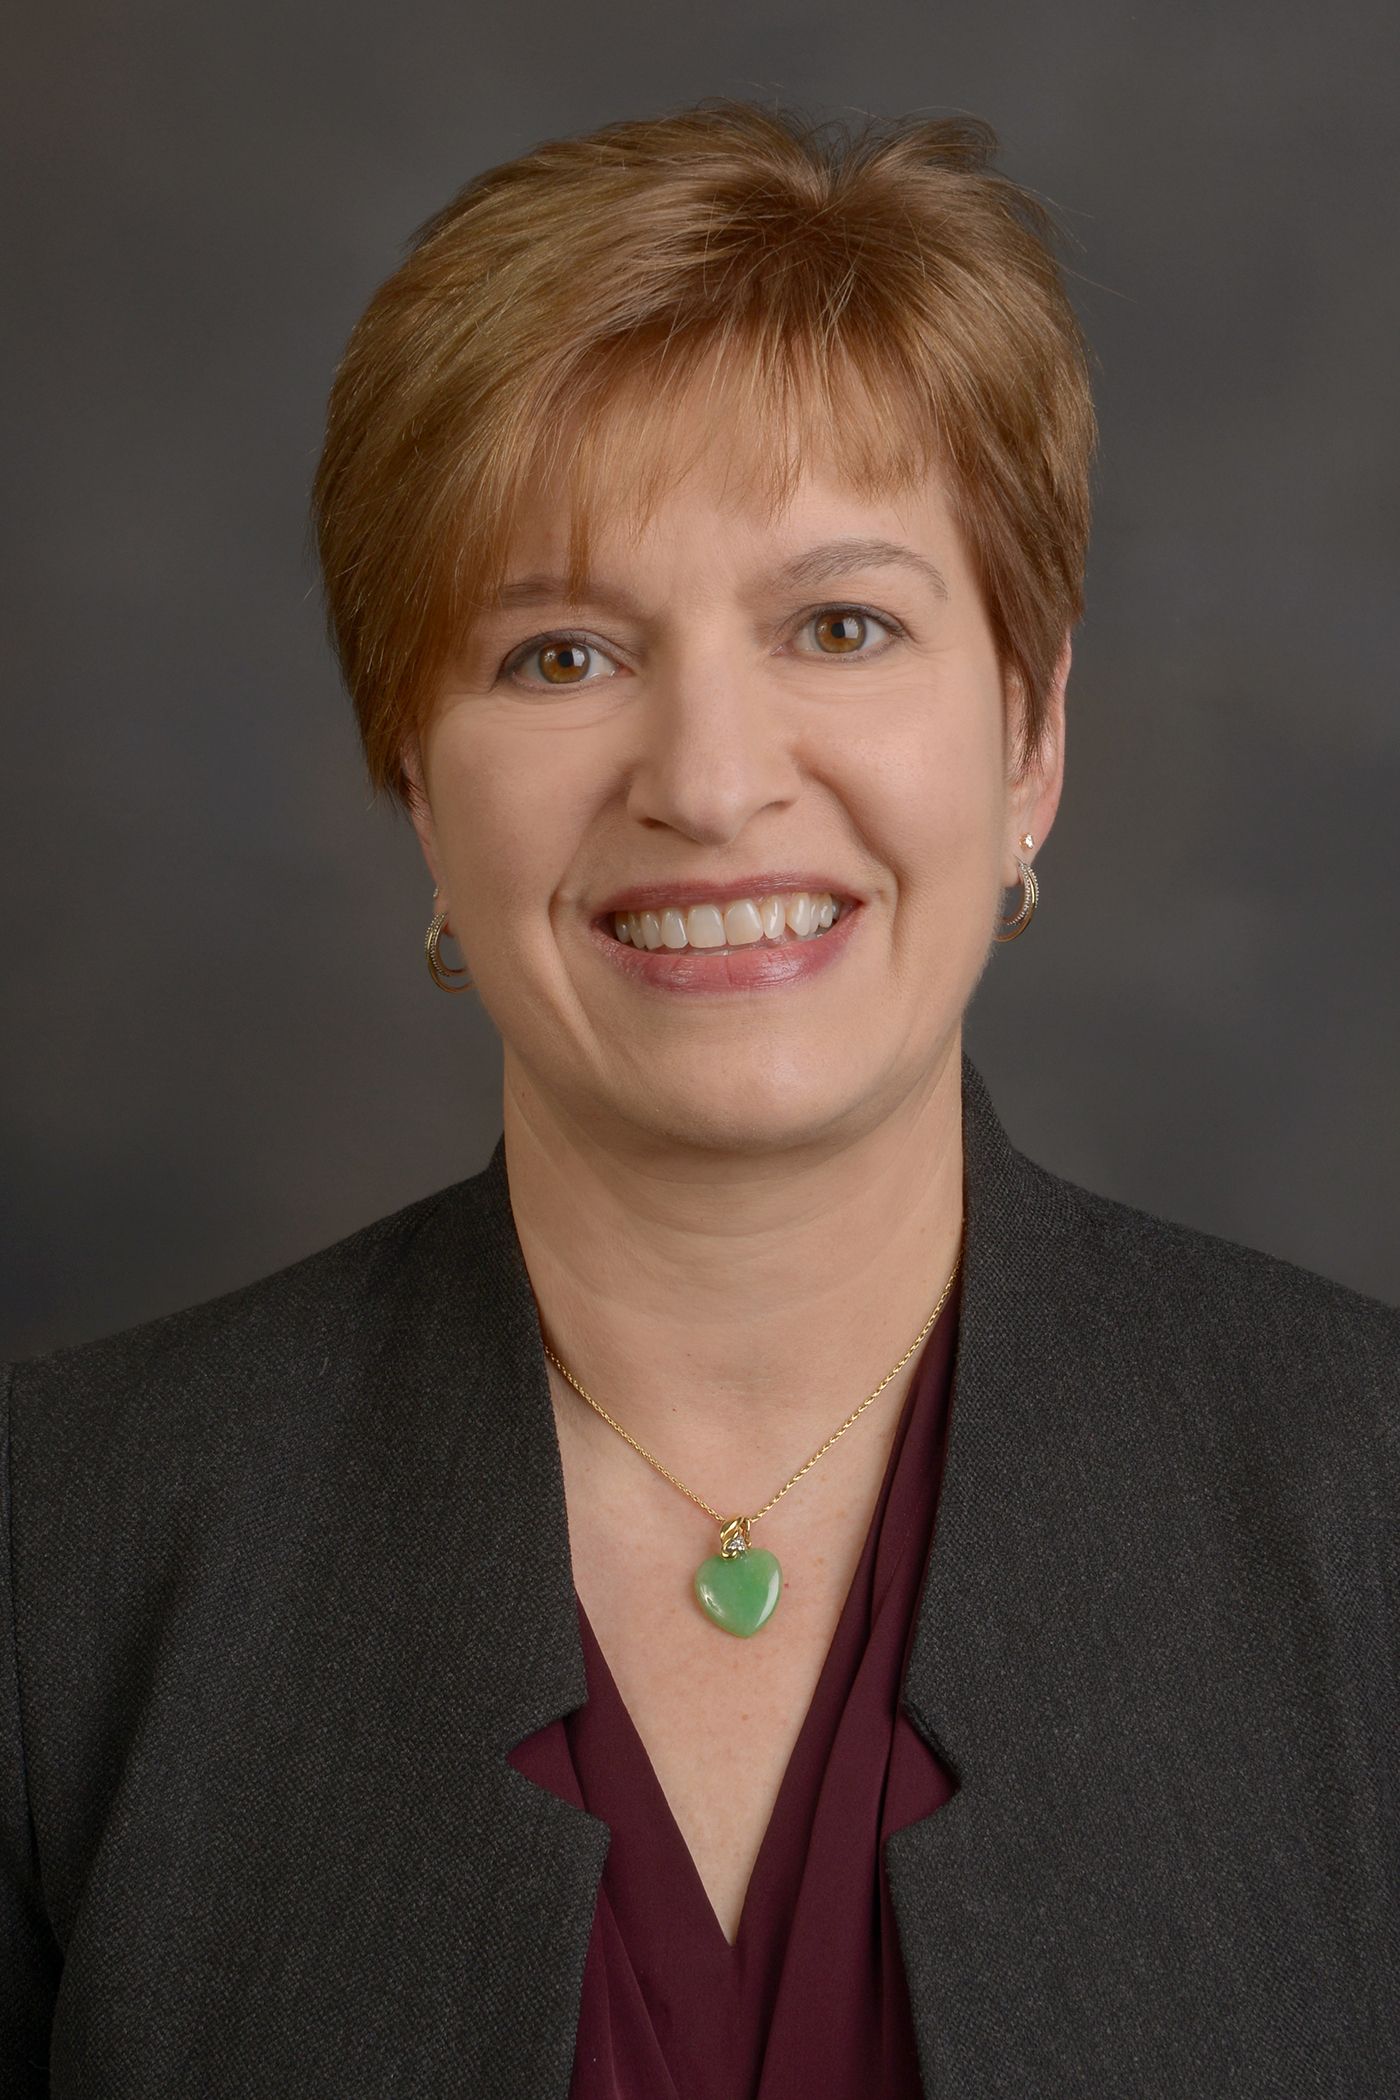 Dr. Arlene Drack, portrait